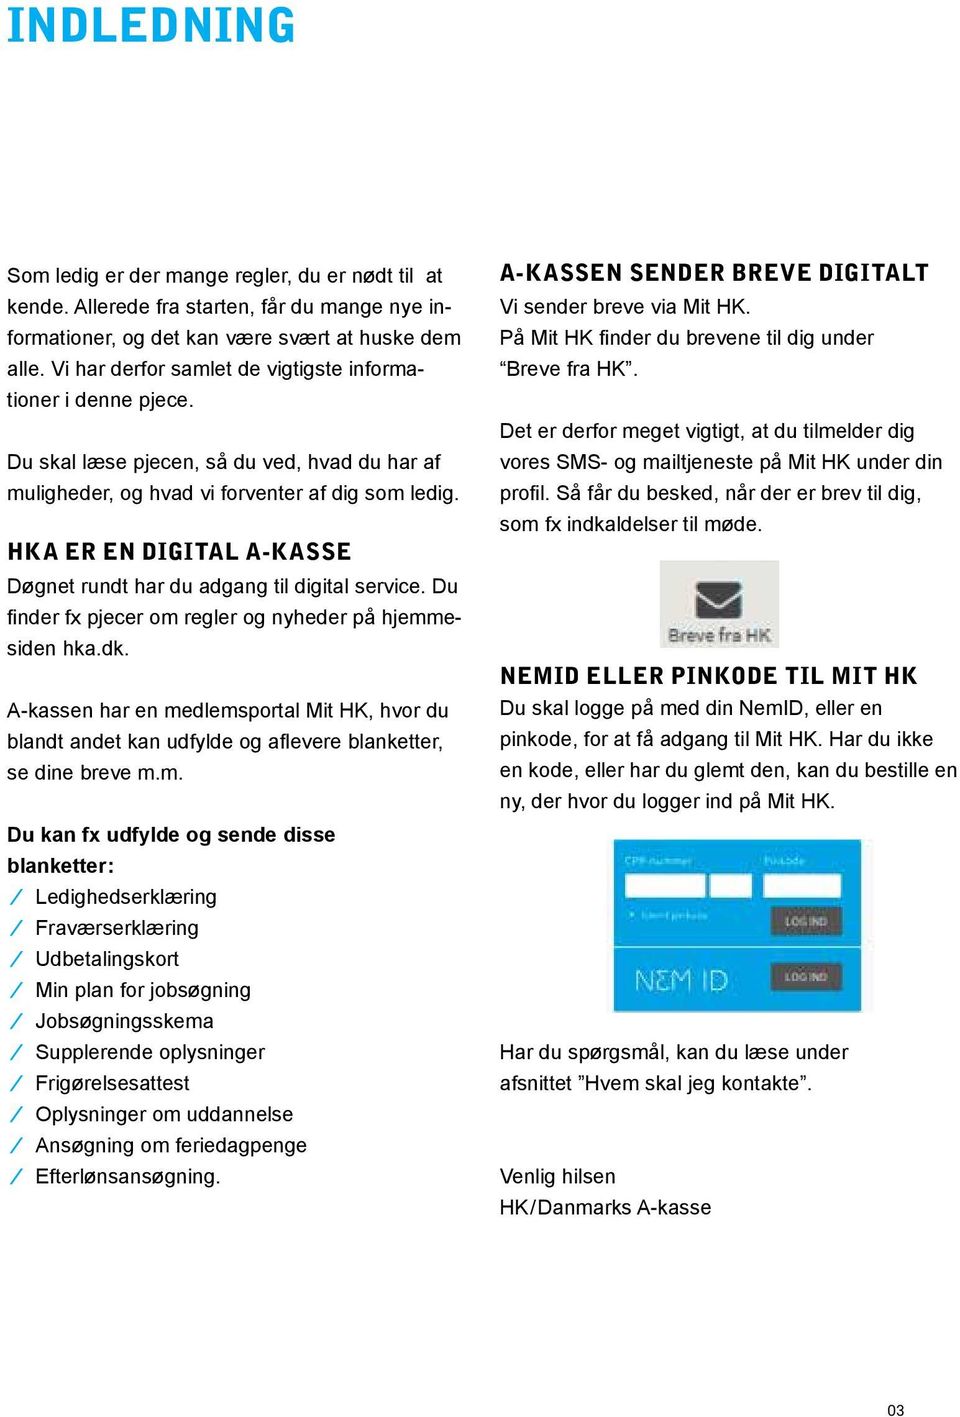 HKA er en digital a-kasse Døgnet rundt har du adgang til digital service. Du finder fx pjecer om regler og nyheder på hjemmesiden hka.dk.